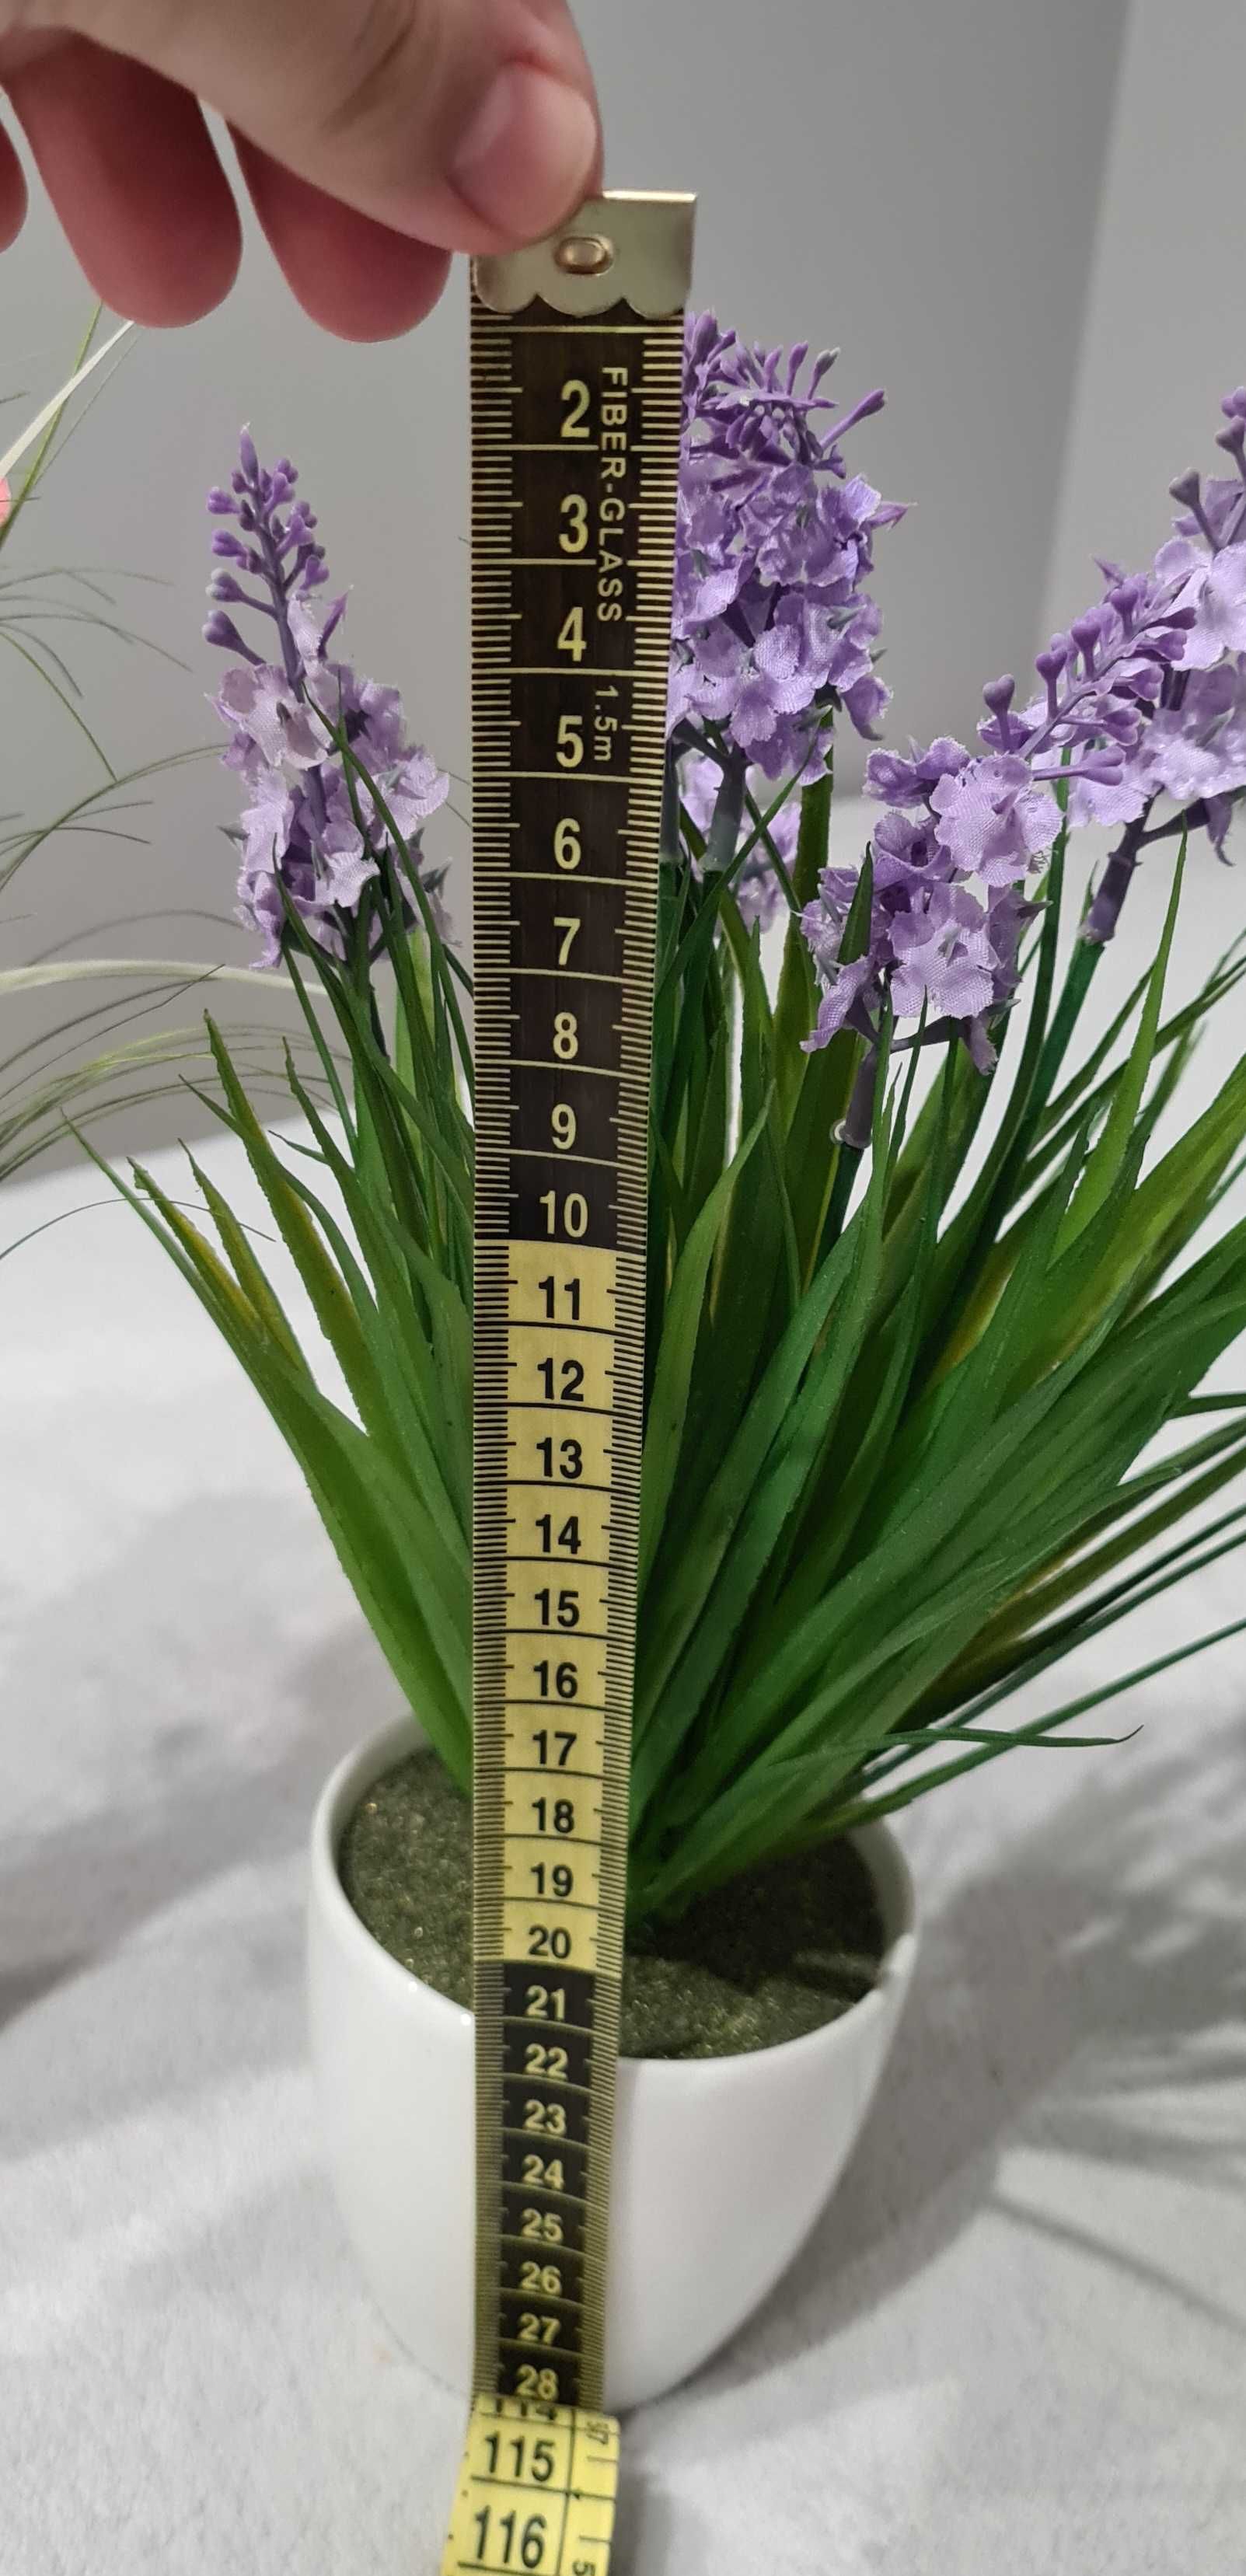 Sztuczne rośliny doniczkowe 7×22-30 cm  cena za sztukę